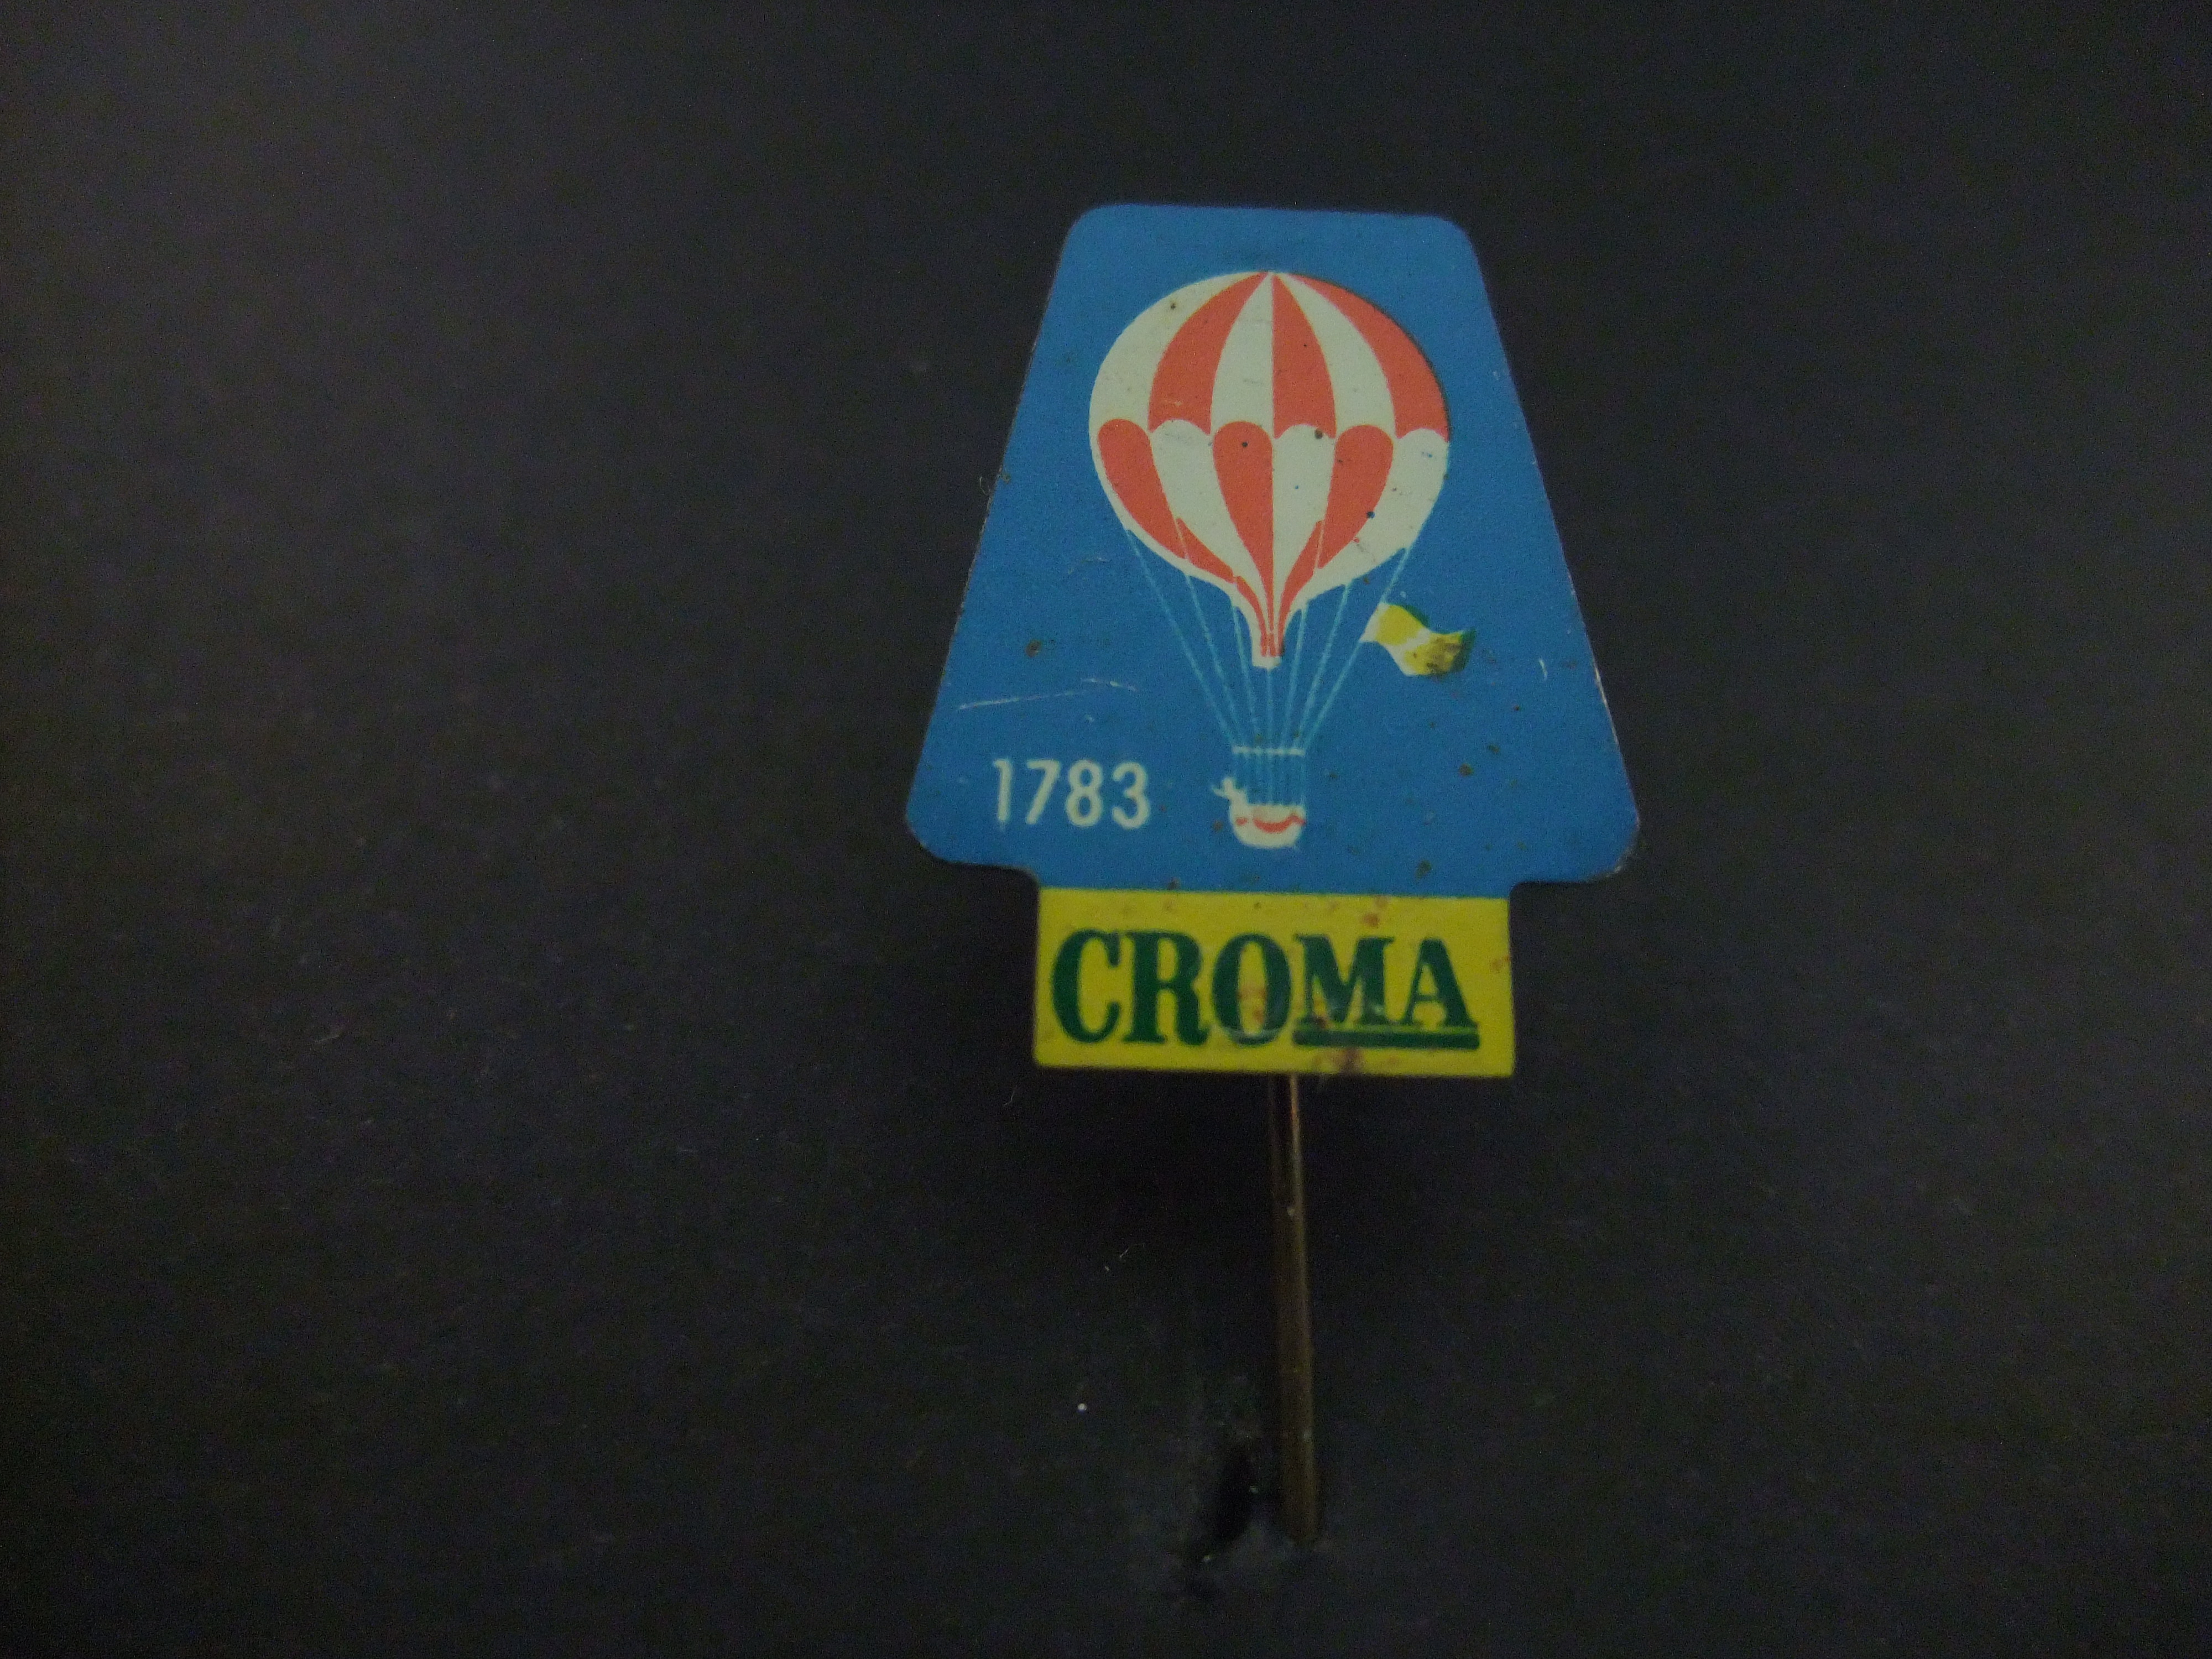 Croma bak-en braadproduct van Unilever ( heteluchtballon)